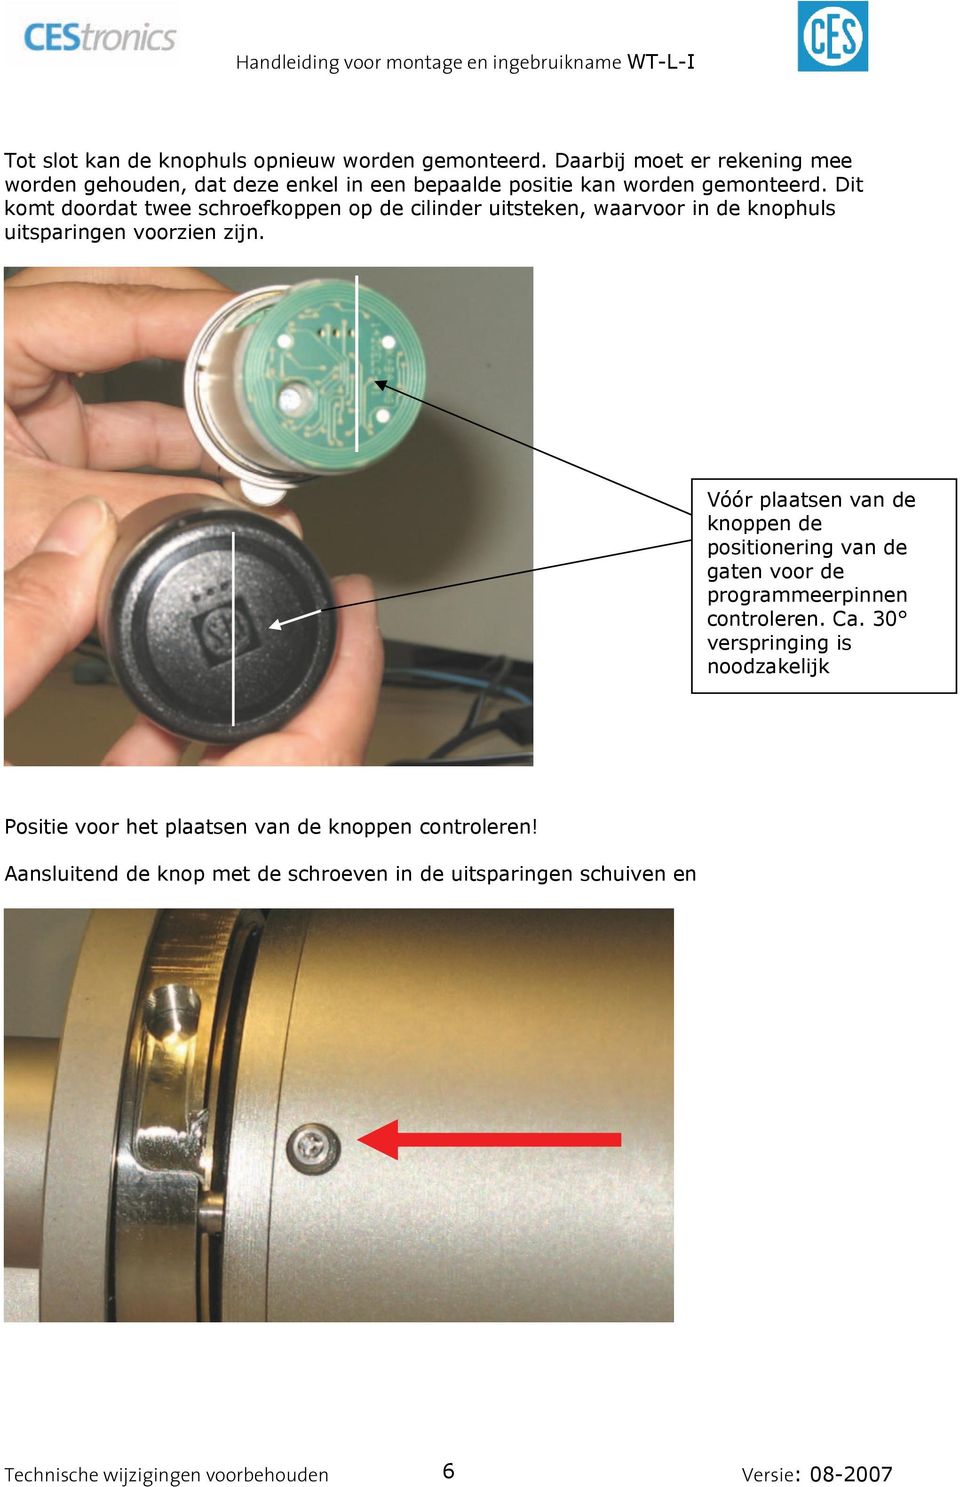 Dit komt doordat twee schroefkoppen op de cilinder uitsteken, waarvoor in de knophuls uitsparingen voorzien zijn.